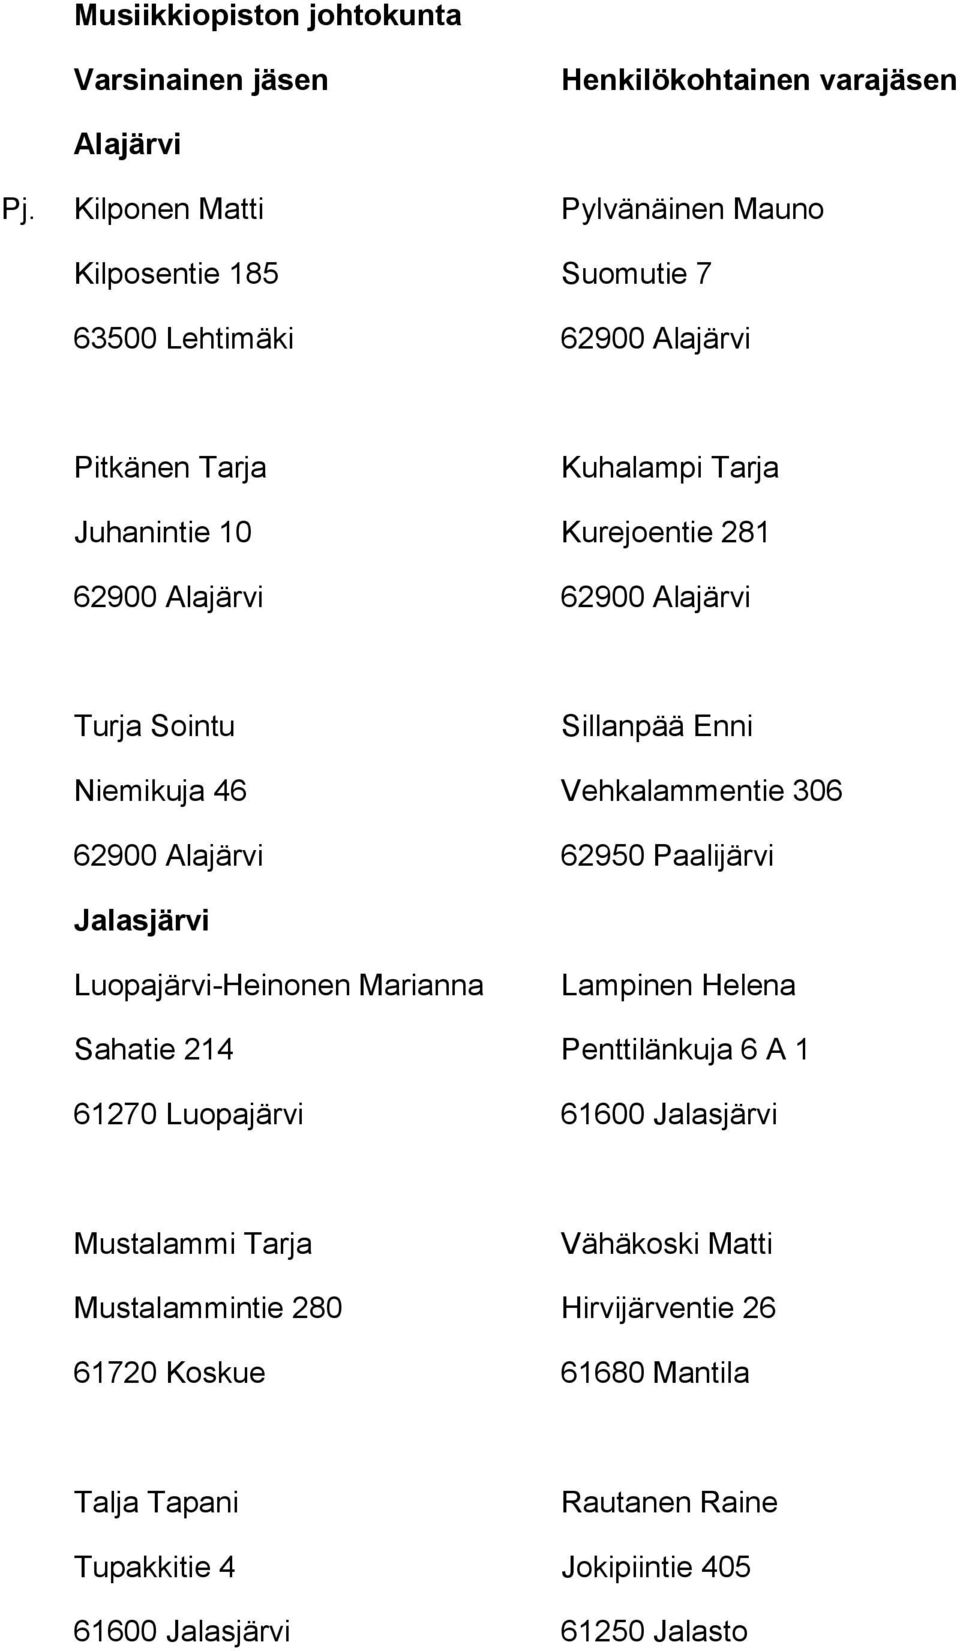 281 Turja Sointu Sillanpää Enni Niemikuja 46 Vehkalammentie 306 62900 Alajärvi 62950 Paalijärvi Jalasjärvi Luopajärvi-Heinonen Marianna Lampinen